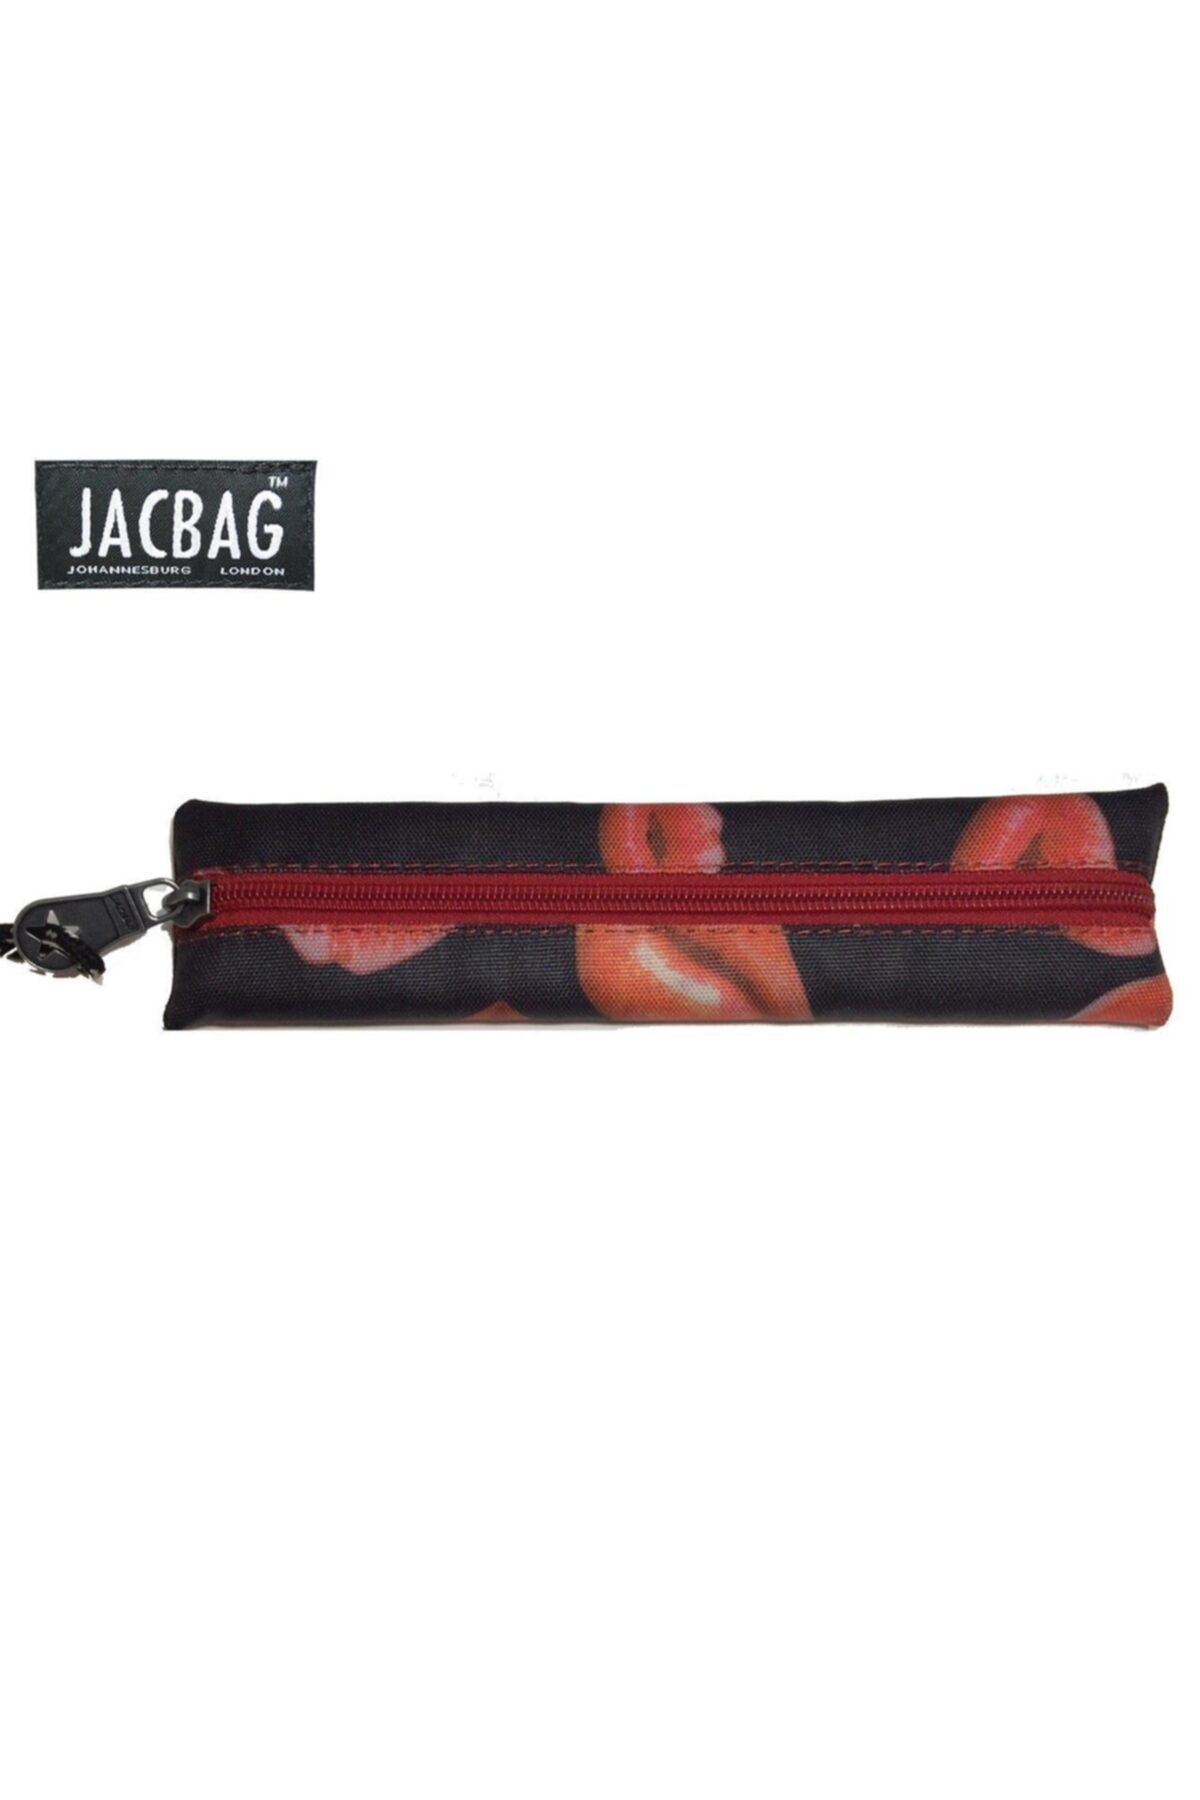 jacbag Jac-17 Mini Kalem Çantası 340100000017 Karışık Renklerde